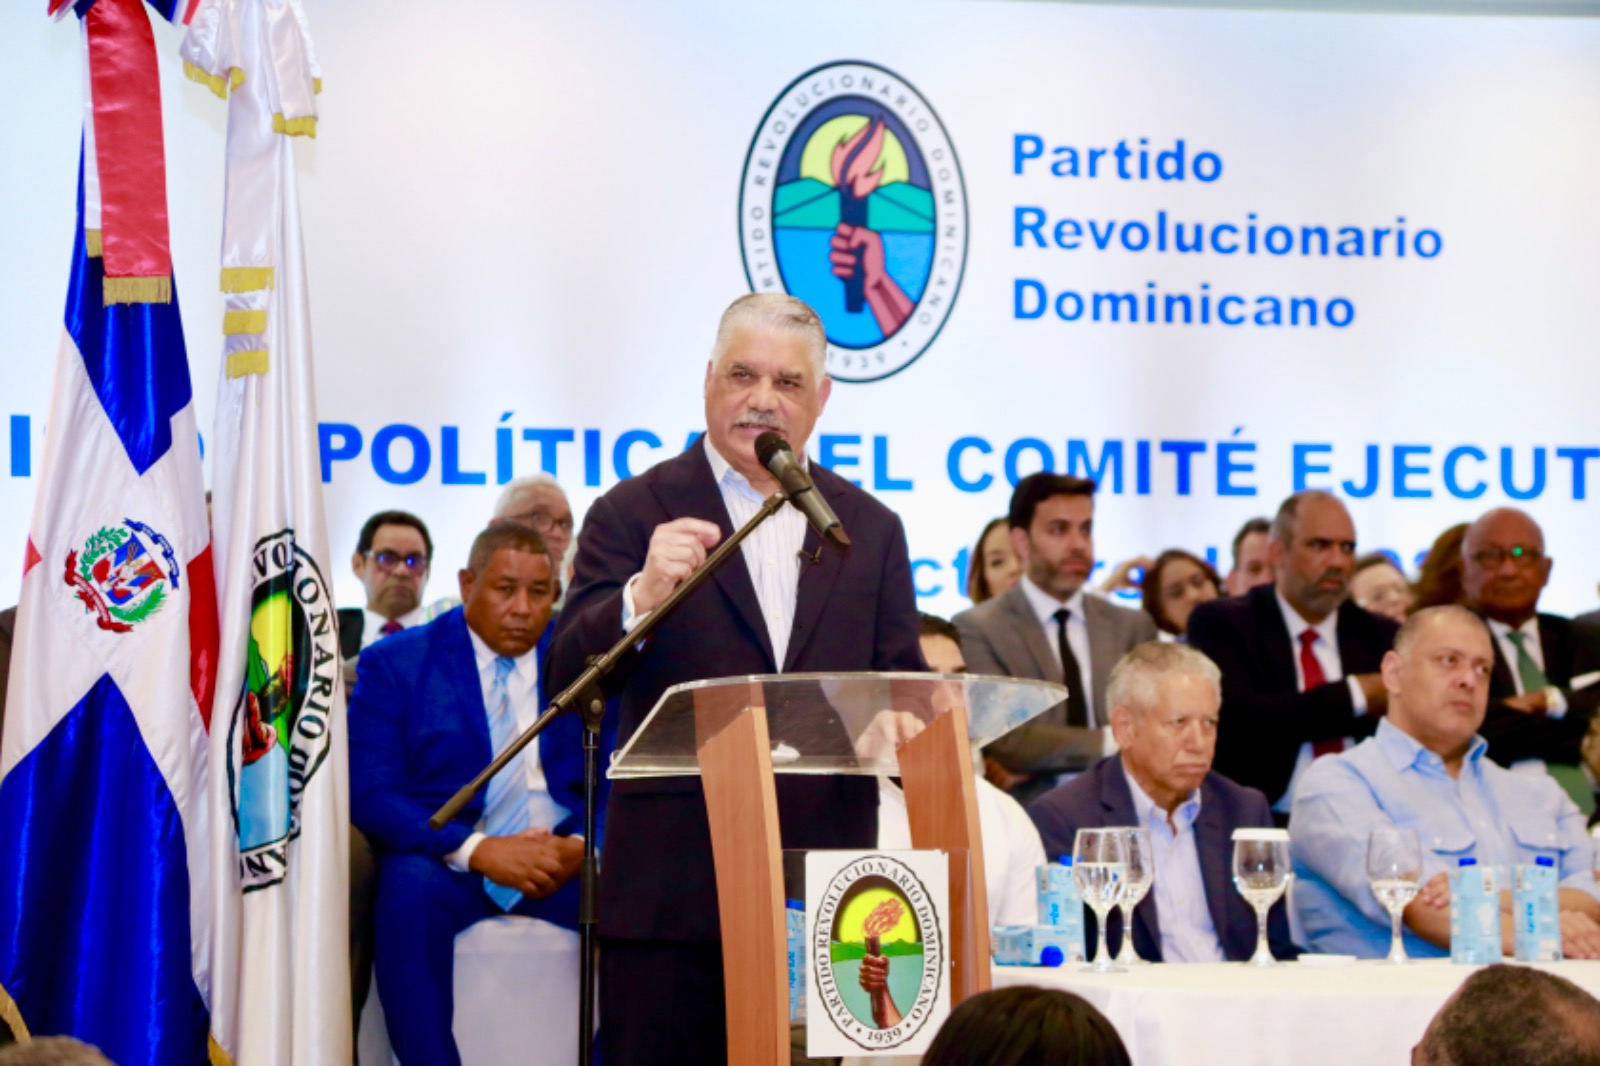 PRD elige a Miguel Vargas como candidato presidencial y convoca Convención Nacional